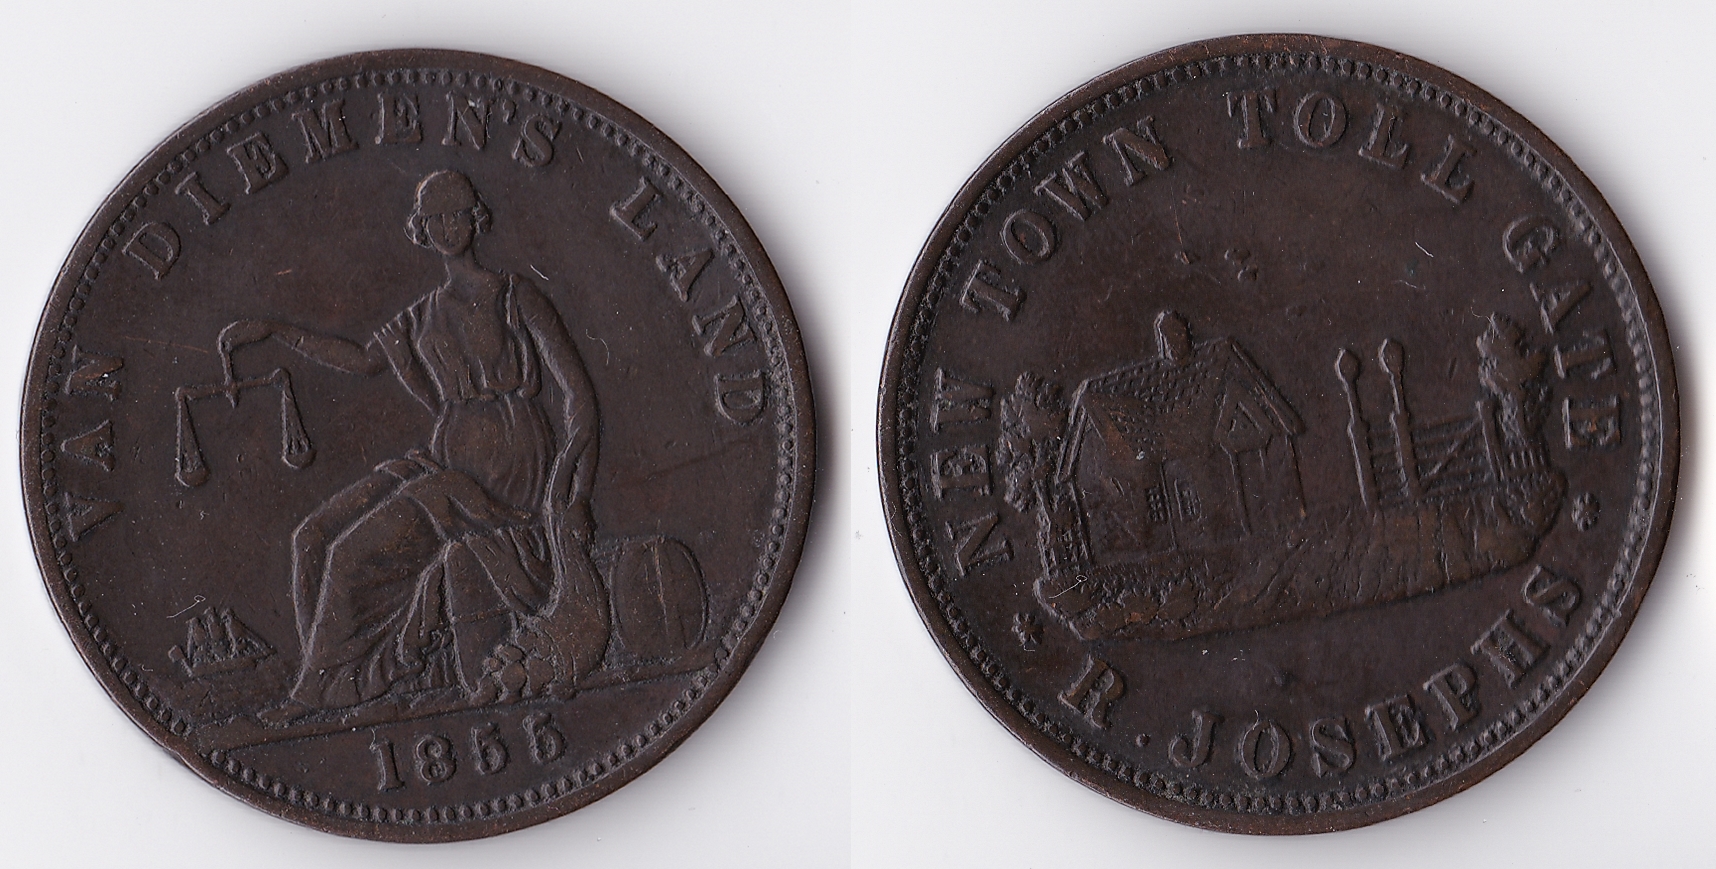 1855 tasmania 1 penny.jpg